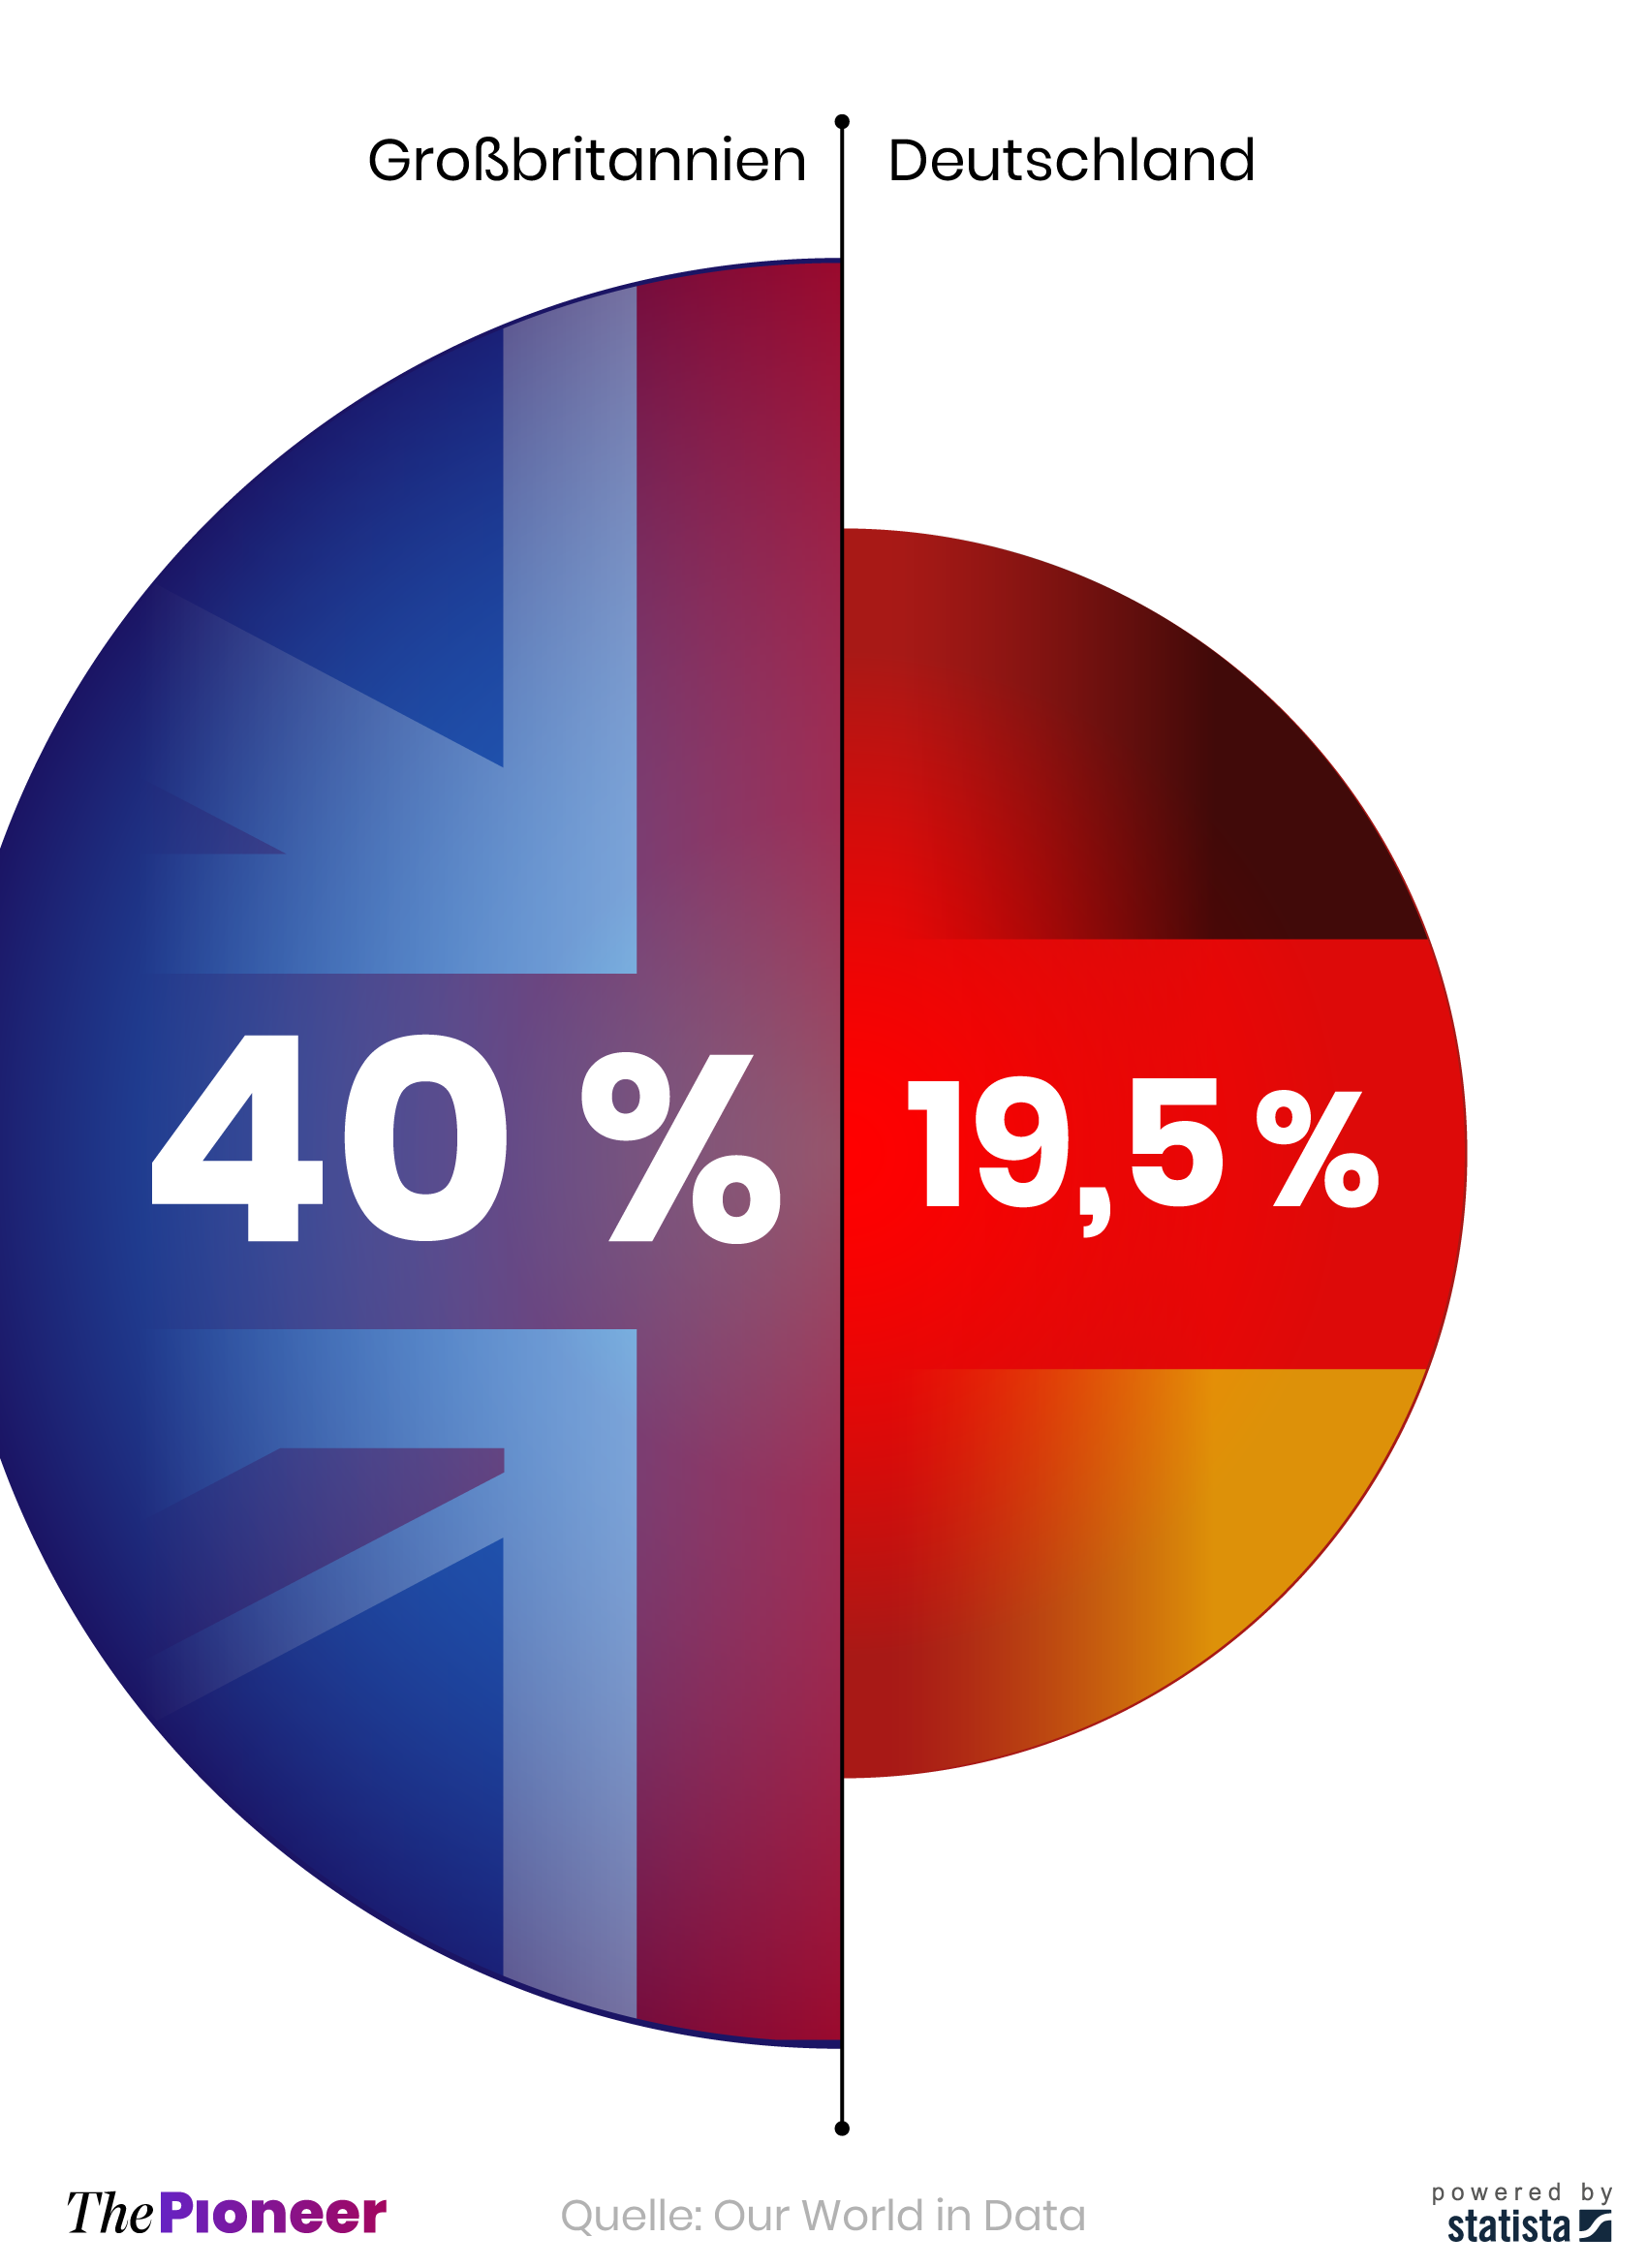 Vergleich der Impfquoten zwischen Großbritannien und Deutschland, in Prozent